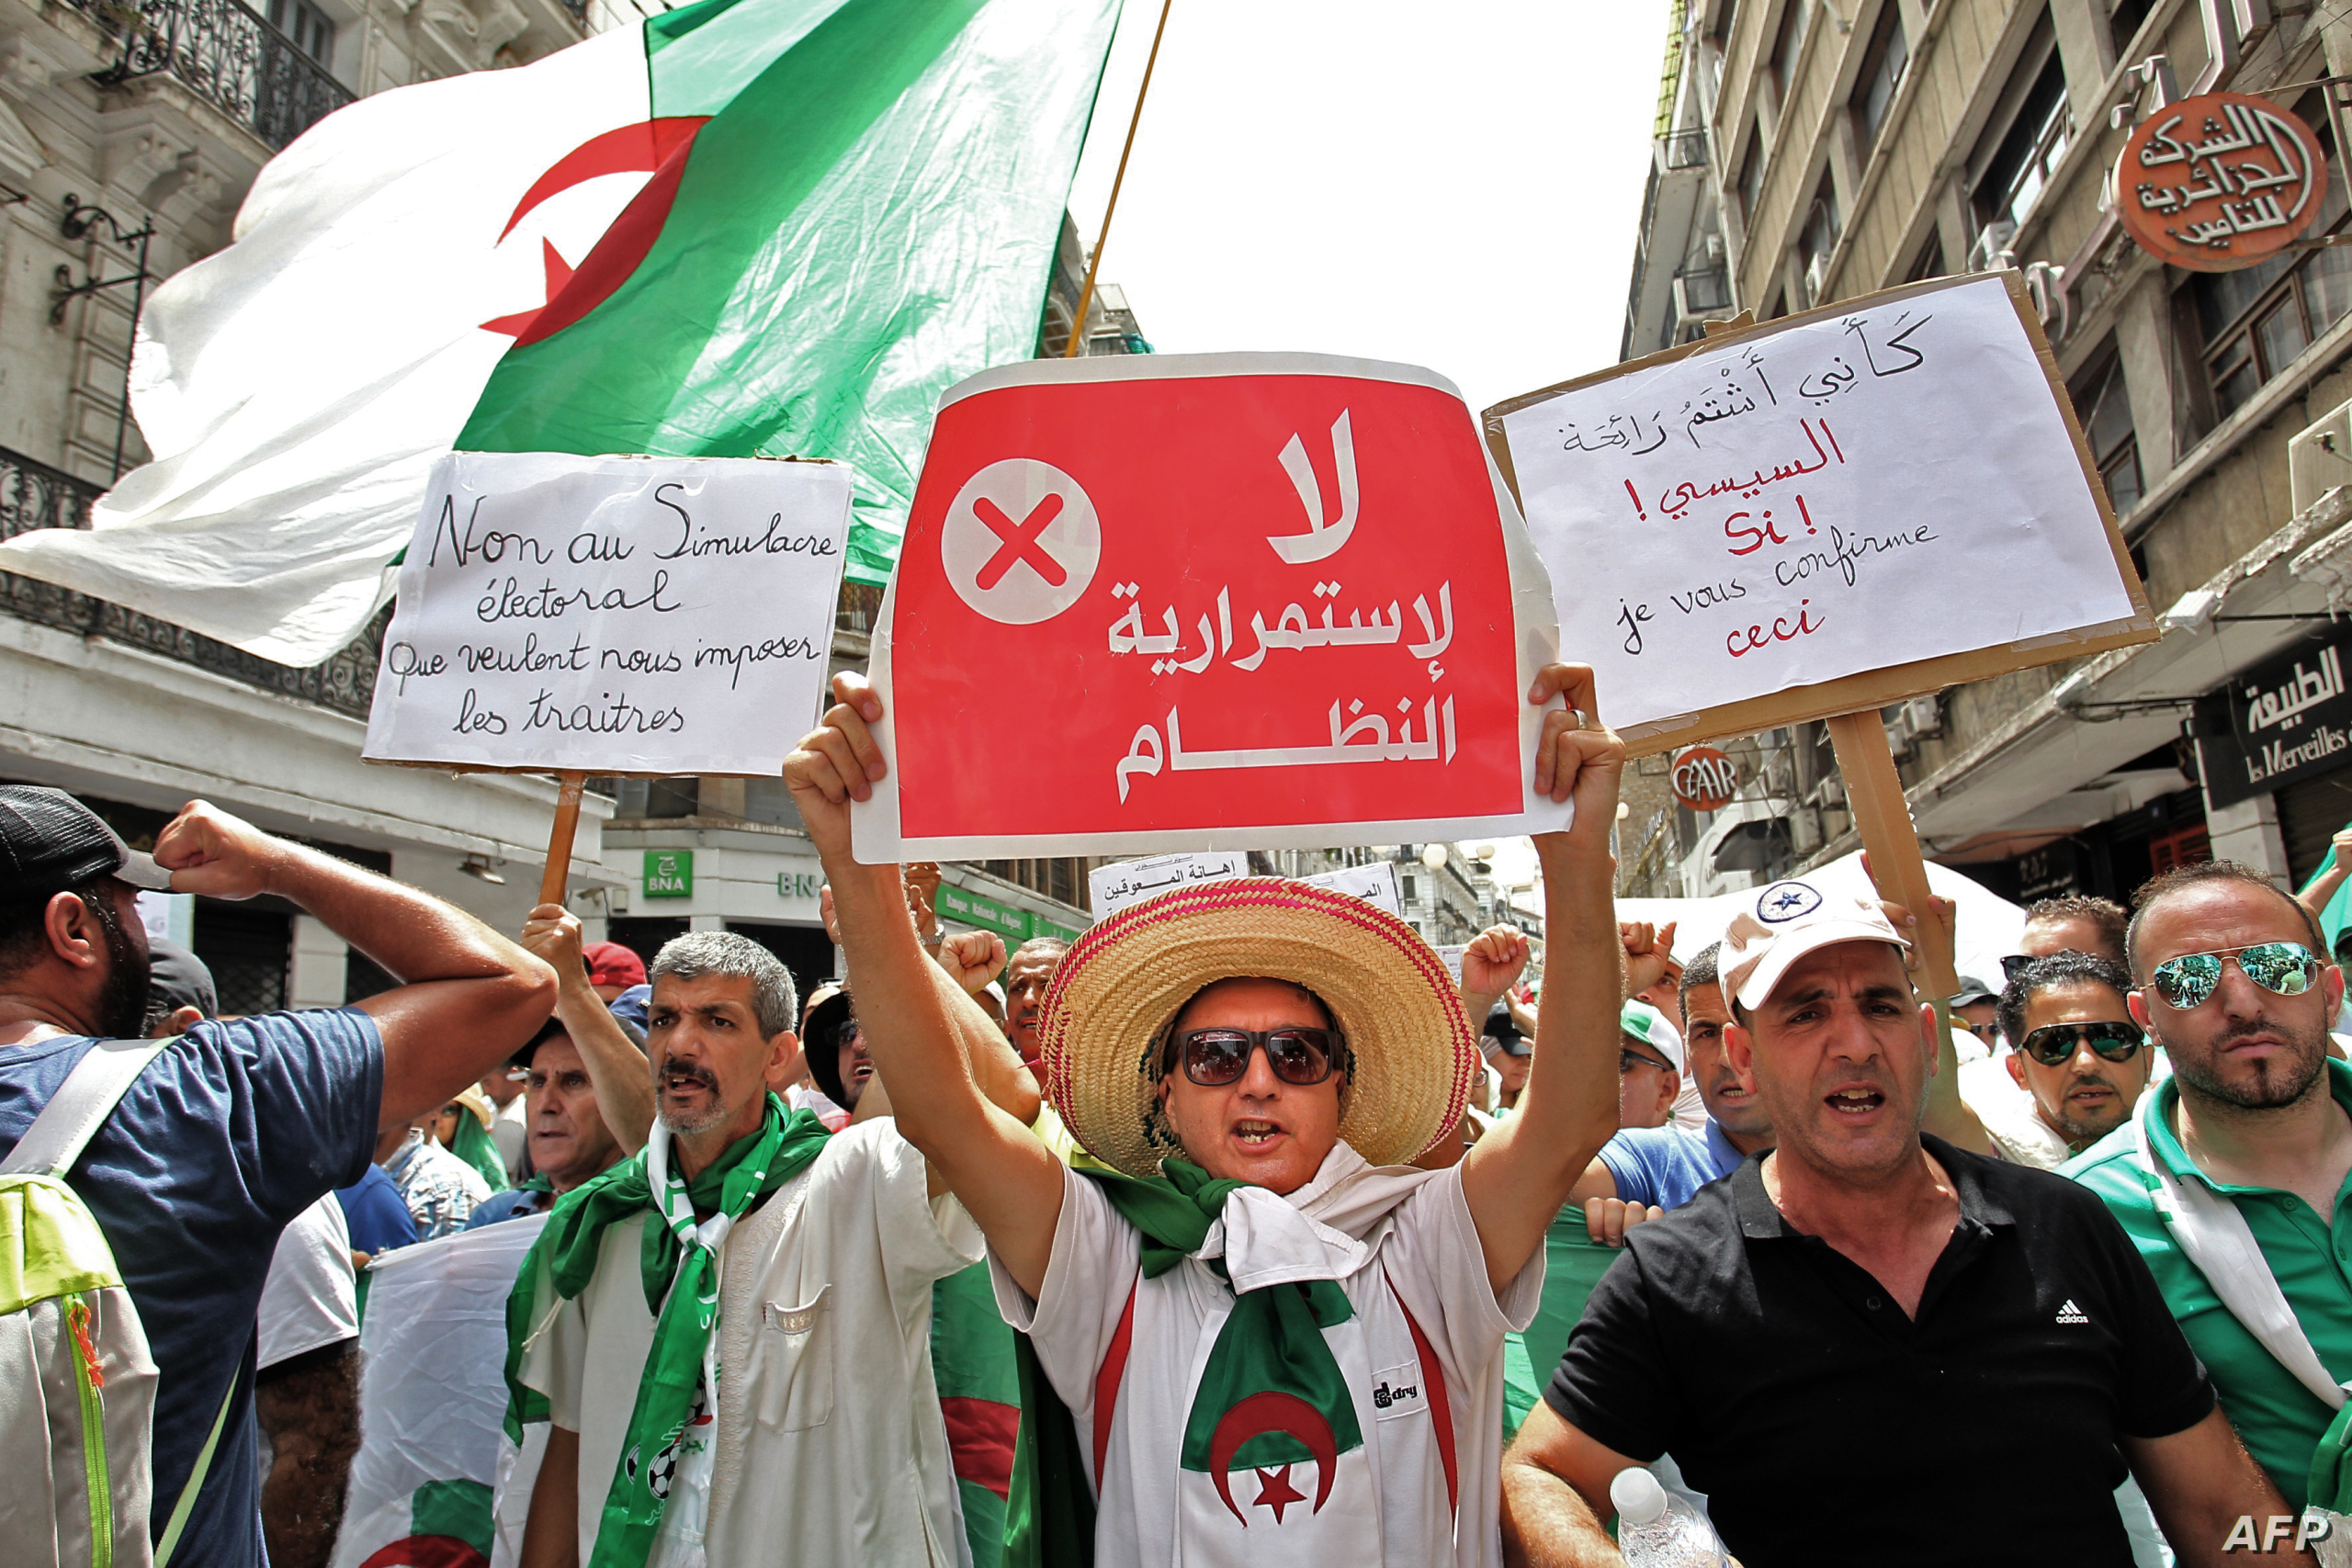 أمنستي: الجزائر تفبرك تهم الإرهاب لقمع أصوات المعارضين